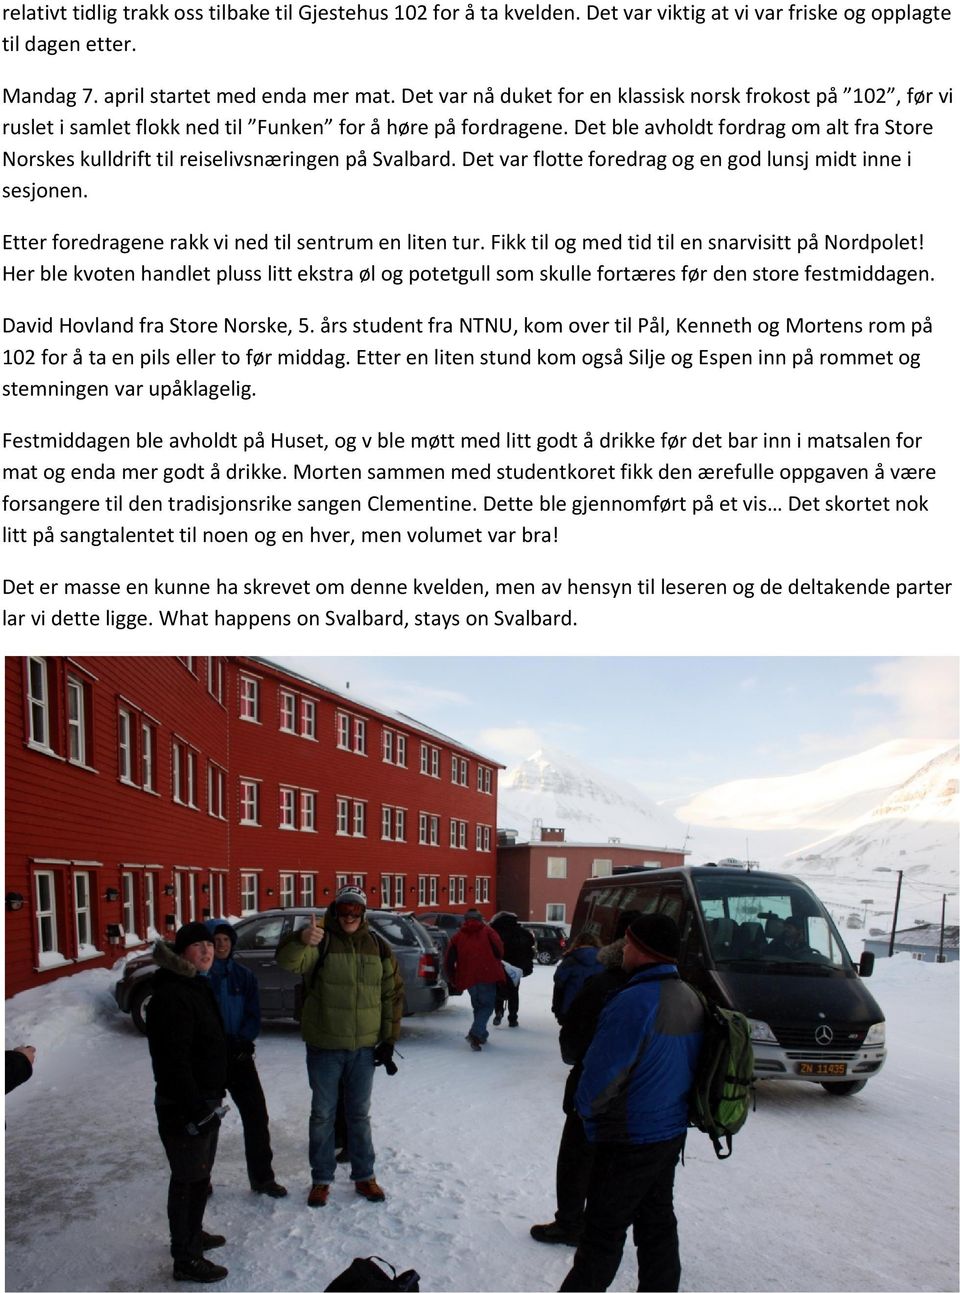 Det ble avholdt fordrag om alt fra Store Norskes kulldrift til reiselivsnæringen på Svalbard. Det var flotte foredrag og en god lunsj midt inne i sesjonen.